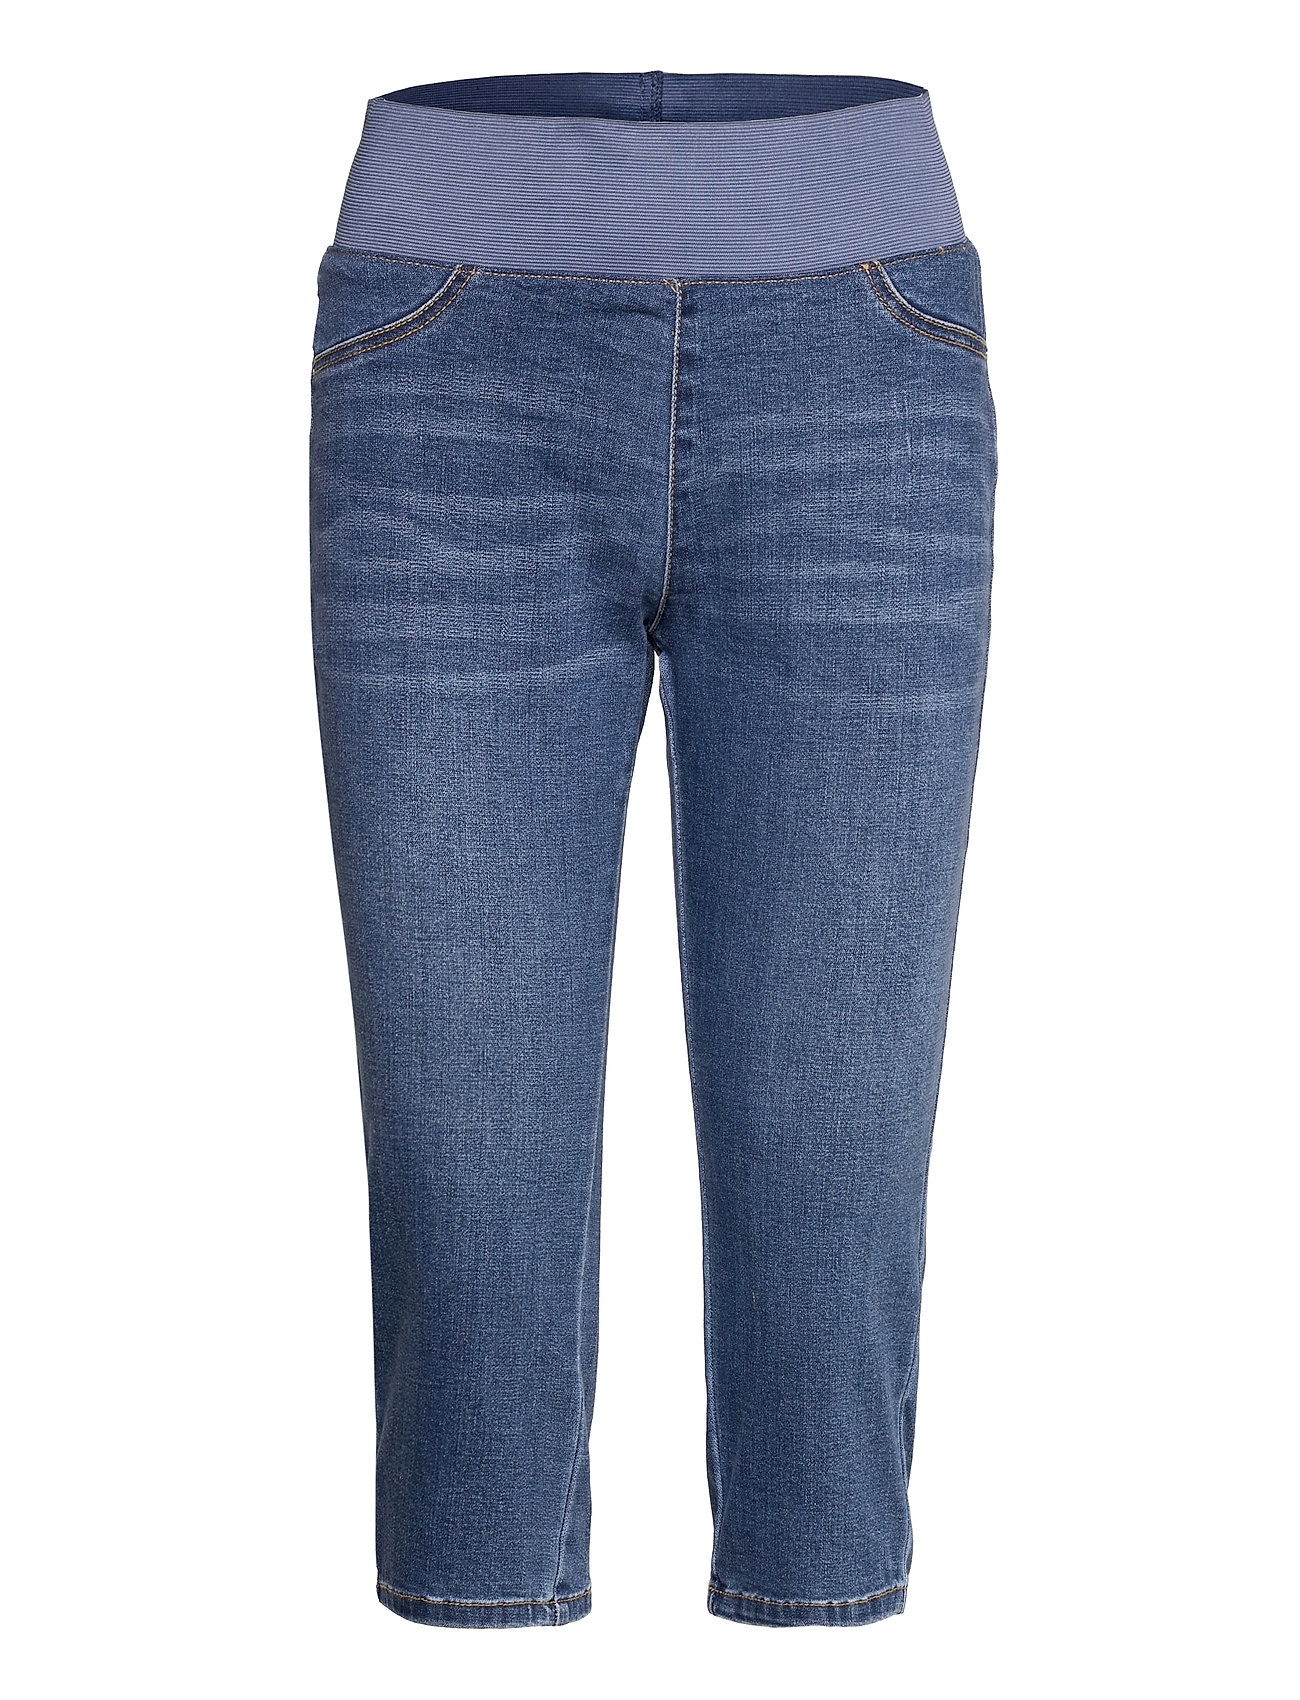 Poplooks Women's 4 Way Stretchy Ponte Knit Capri Skinny Jeans (White)